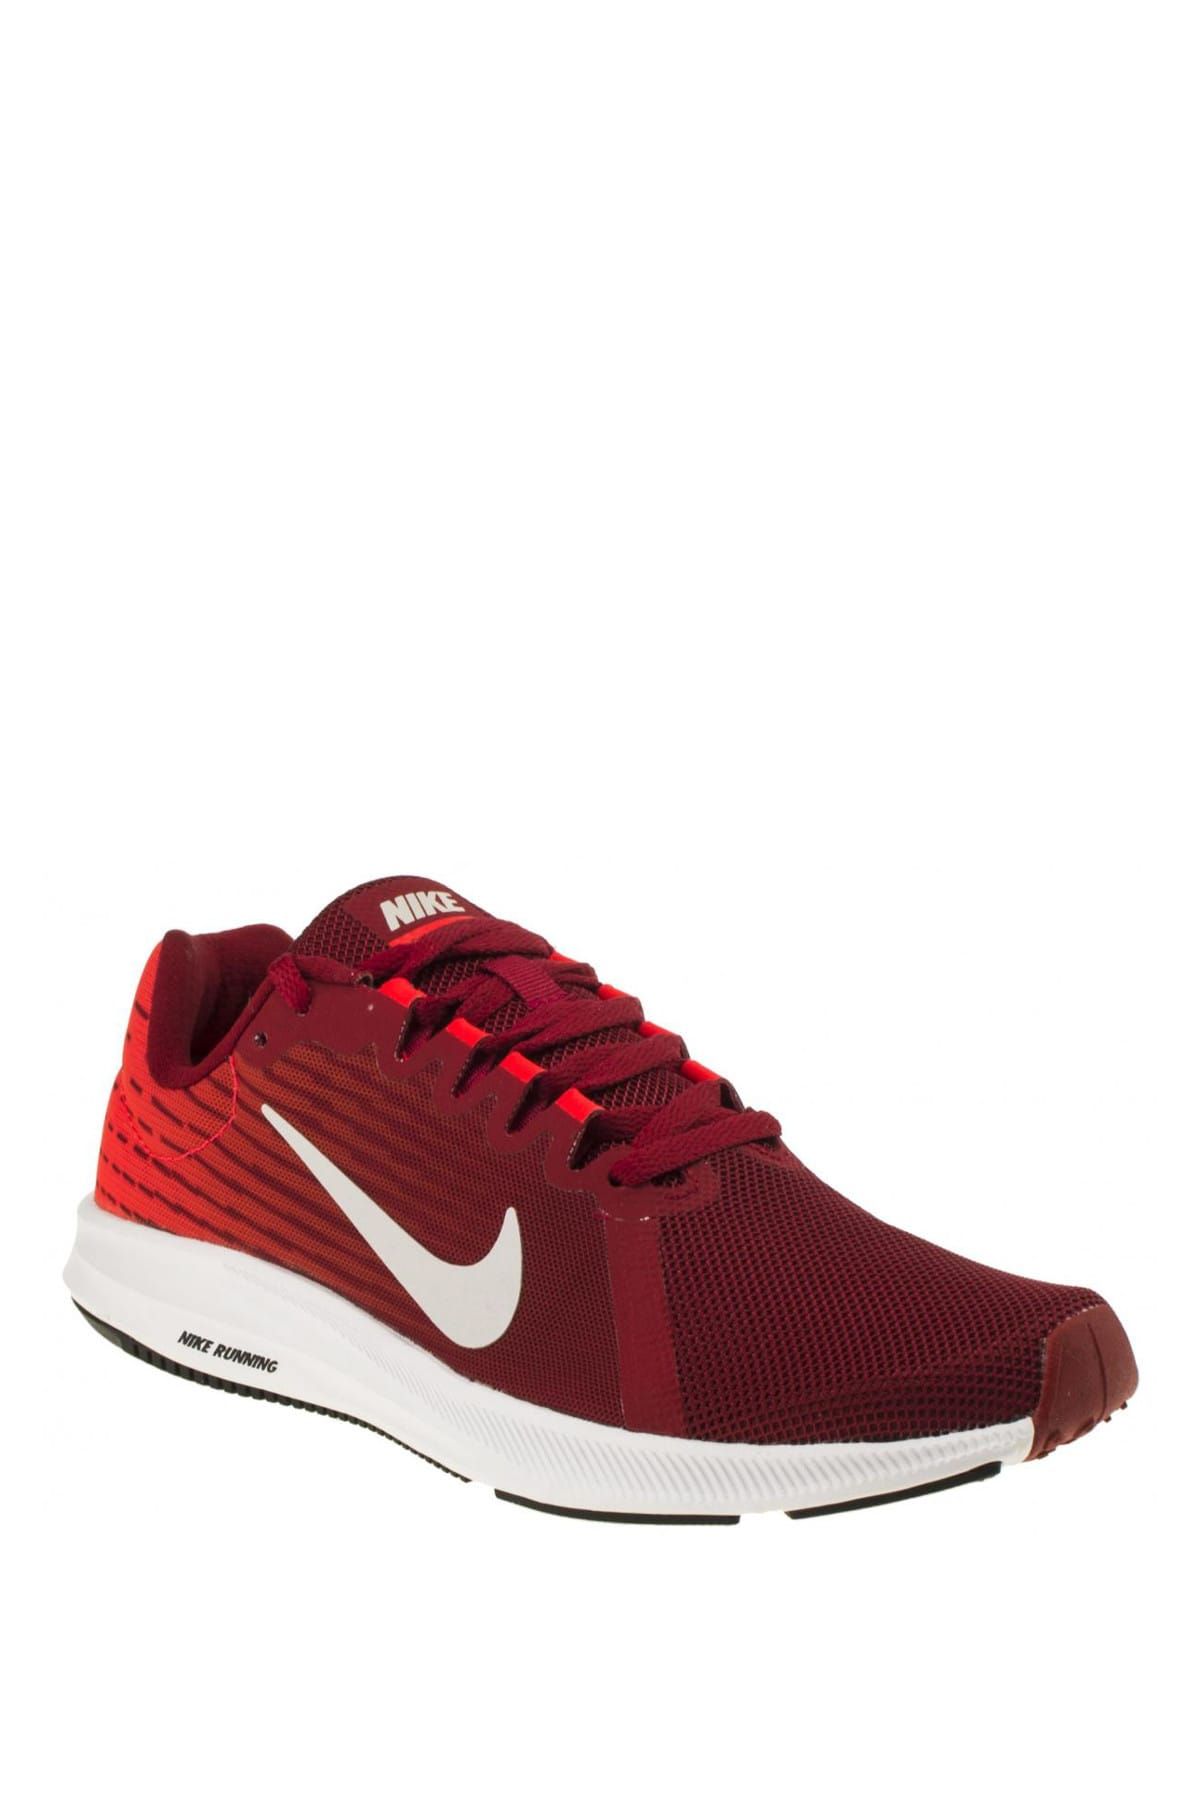 Nike Kadın Koşu & Antrenman Ayakkabısı -  Downshifter 8 Koşu Ayakkabısı - 908994-601